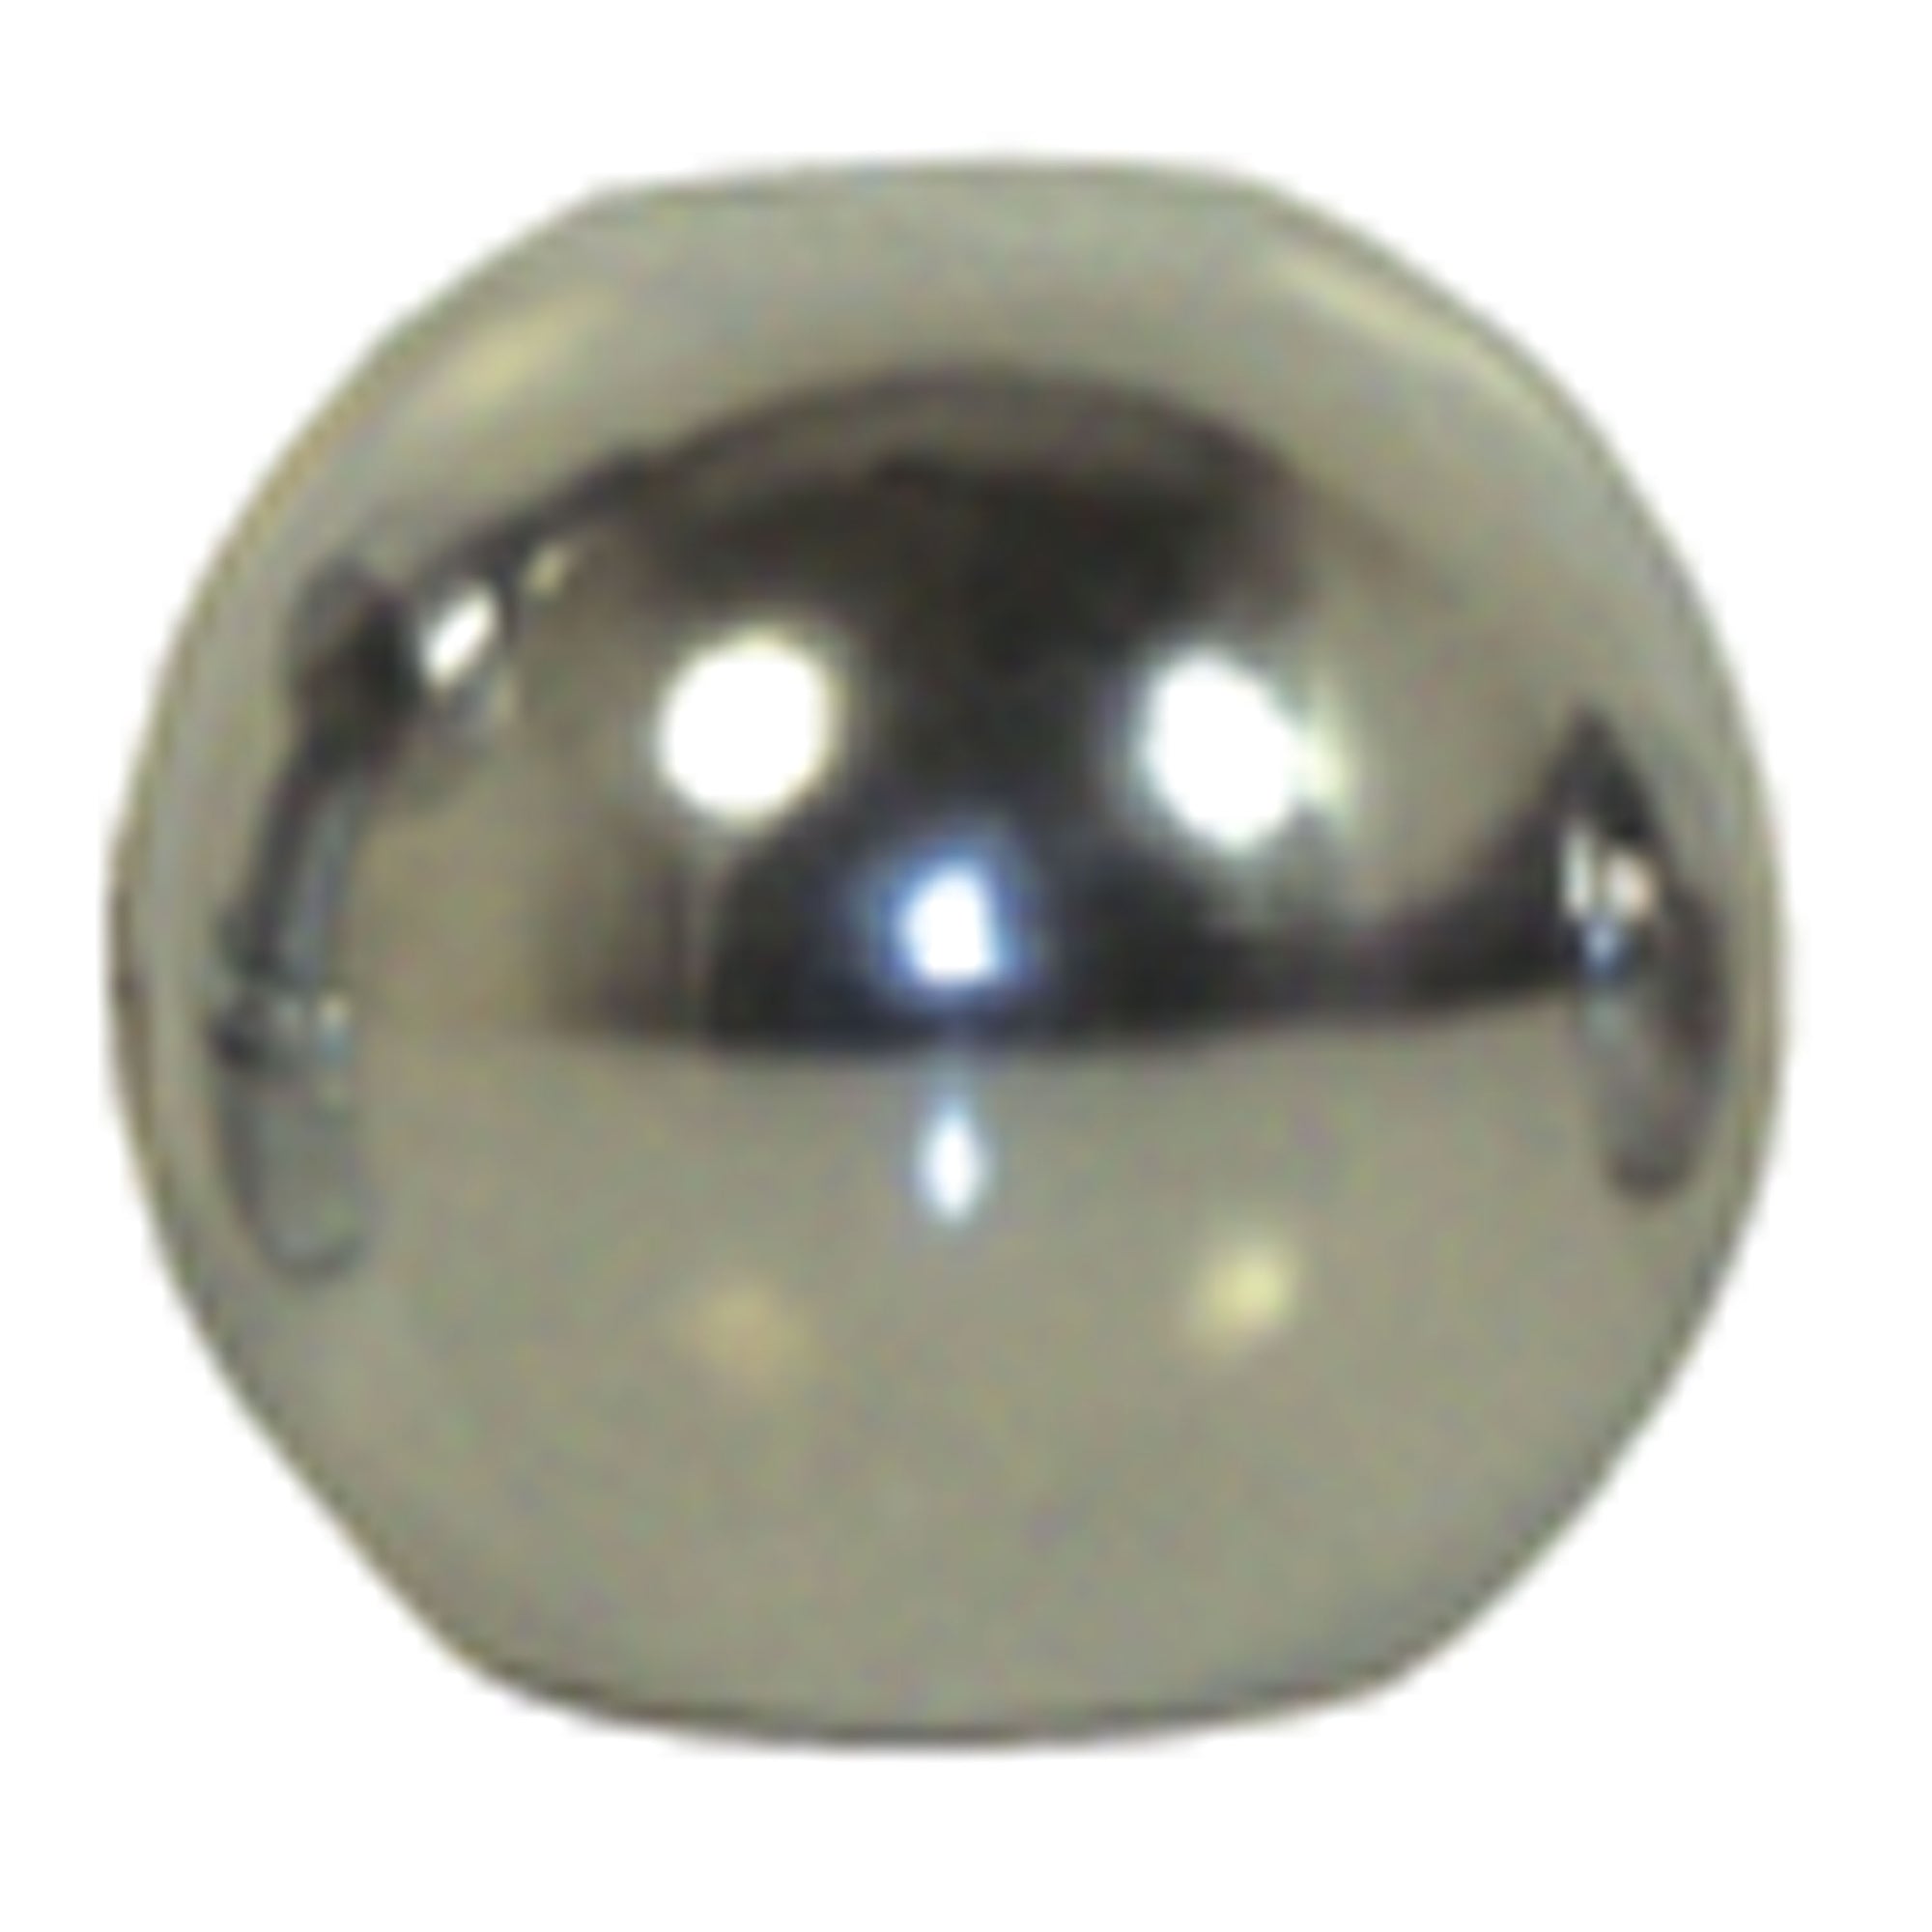 Convert-A-Ball 601B Stainless Steel Replacement Ball - 2-5/16"